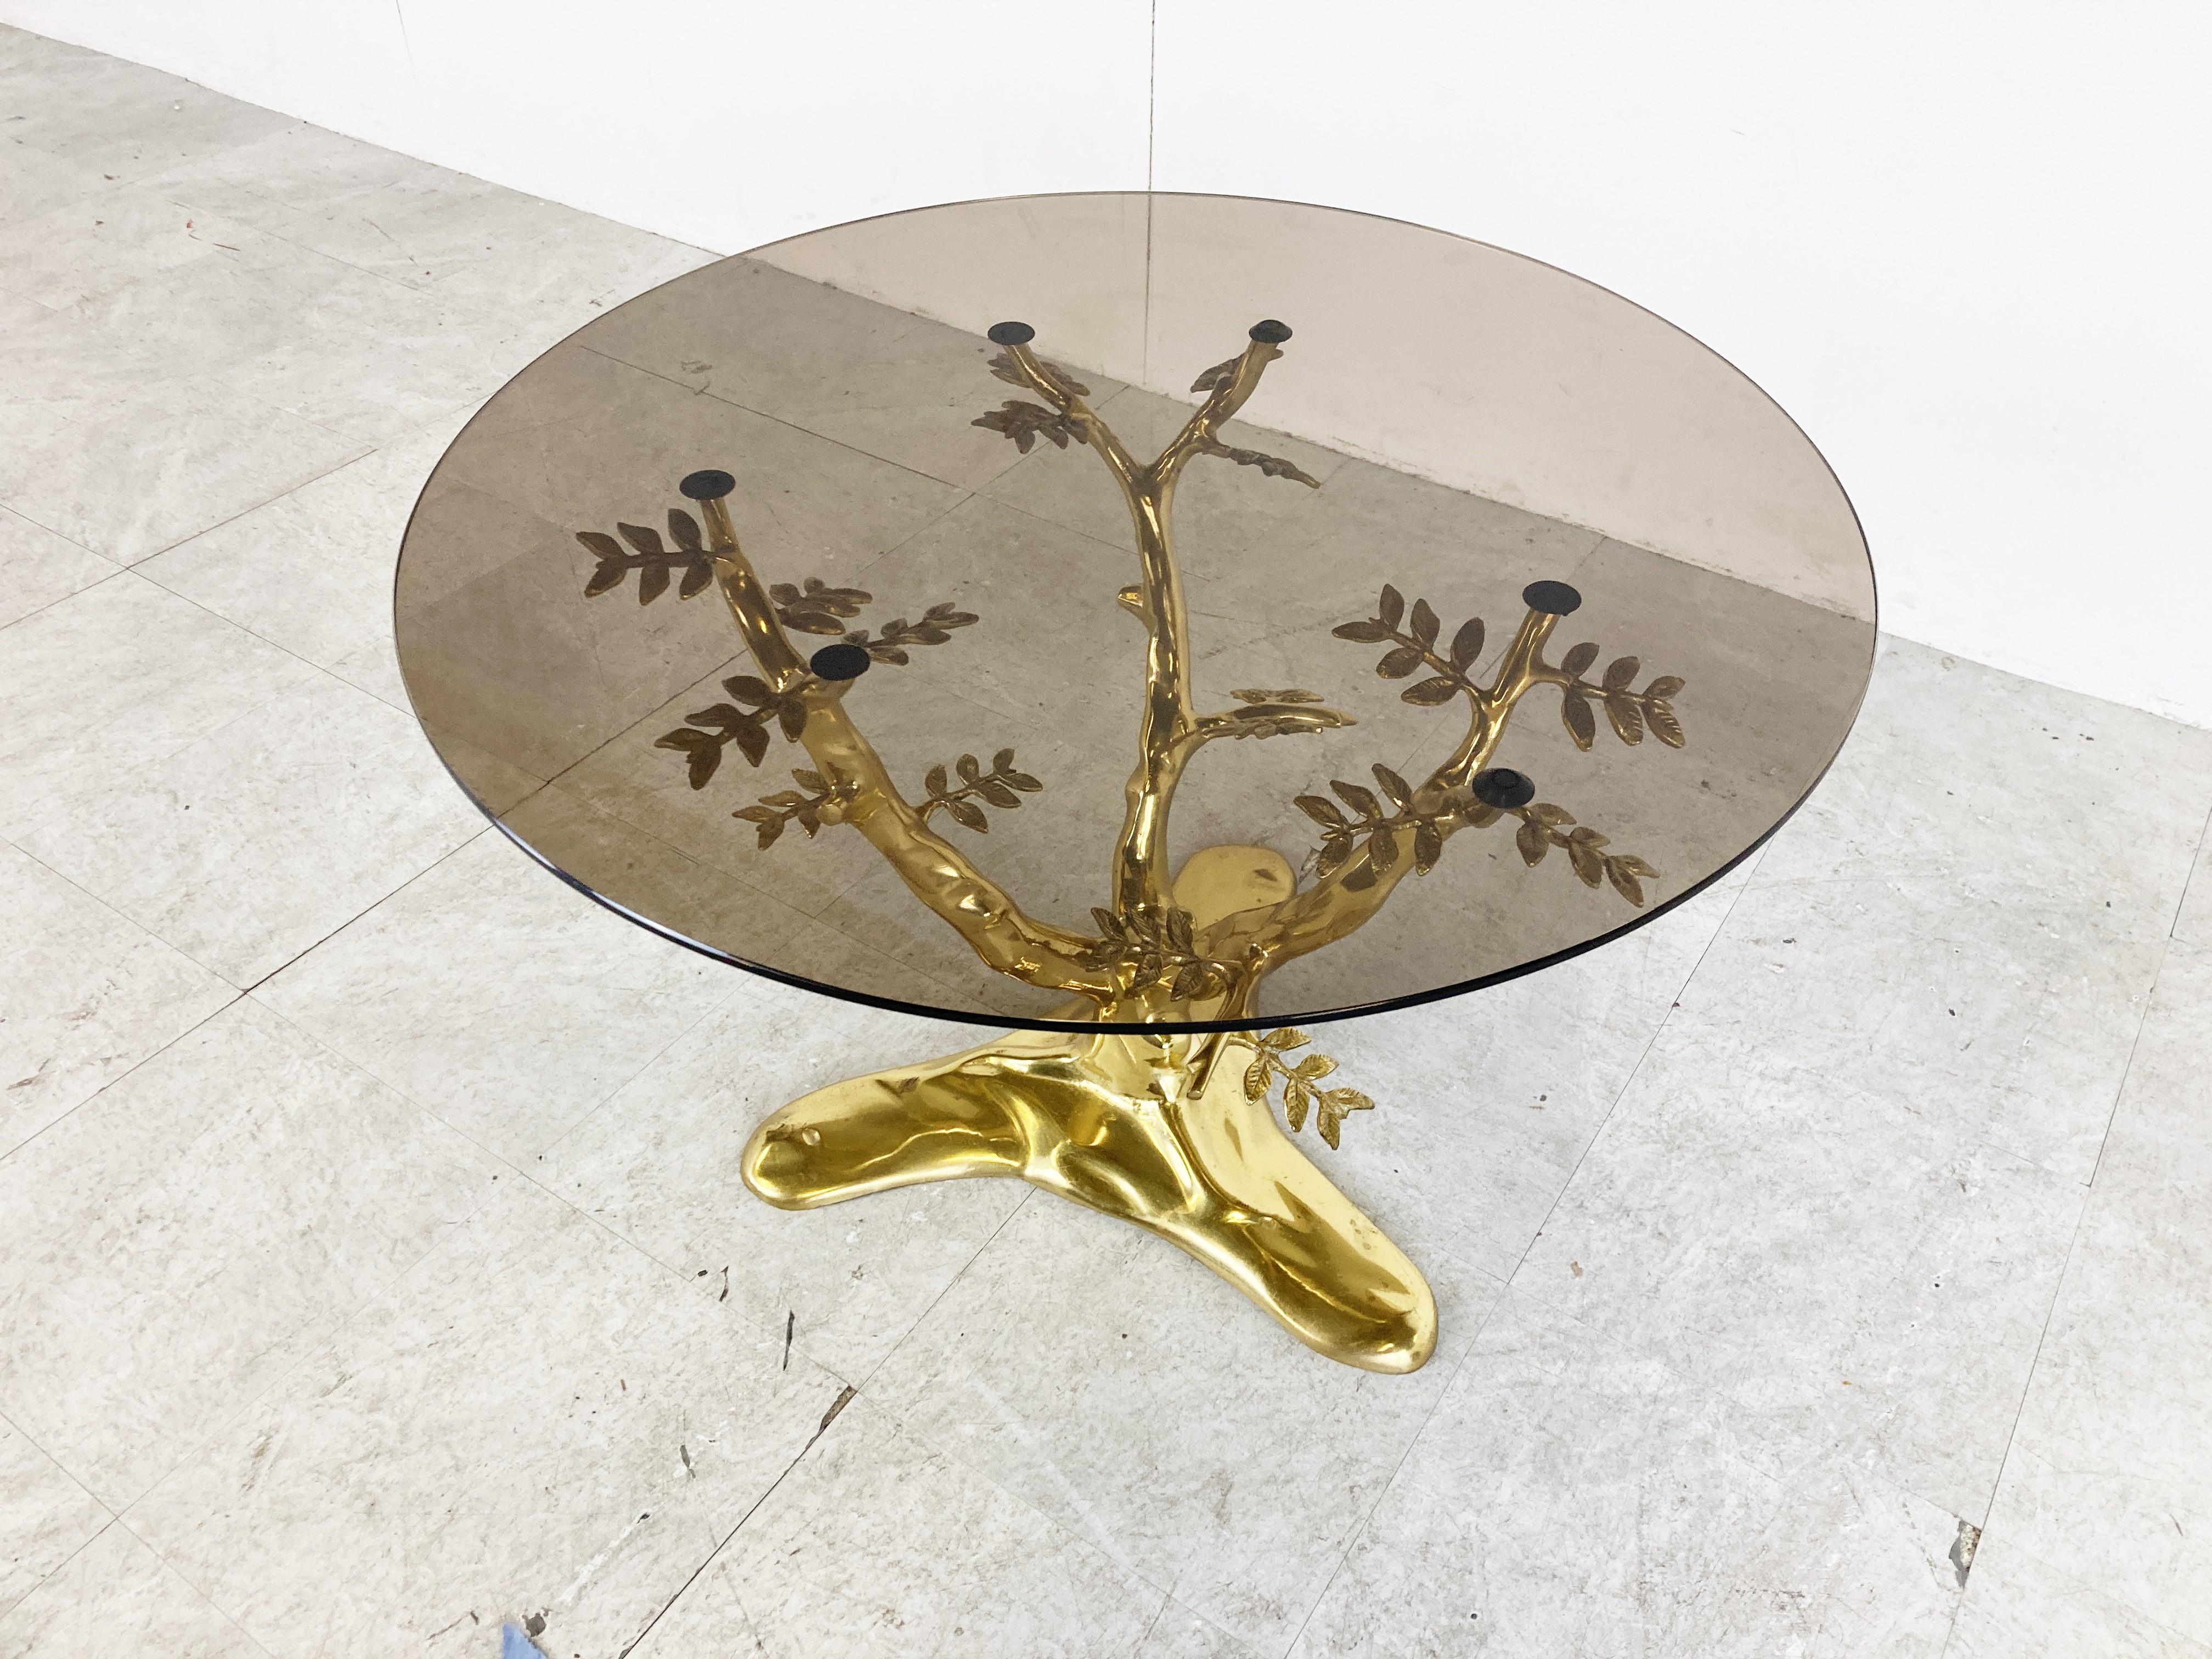 Table basse sculpturale en forme d'arbre en laiton avec un plateau en verre rond fumé.

Belle table basse décorative.

Bon état

Années 1970 - Belgique

Dimensions :
Hauteur : 48cm/18.89